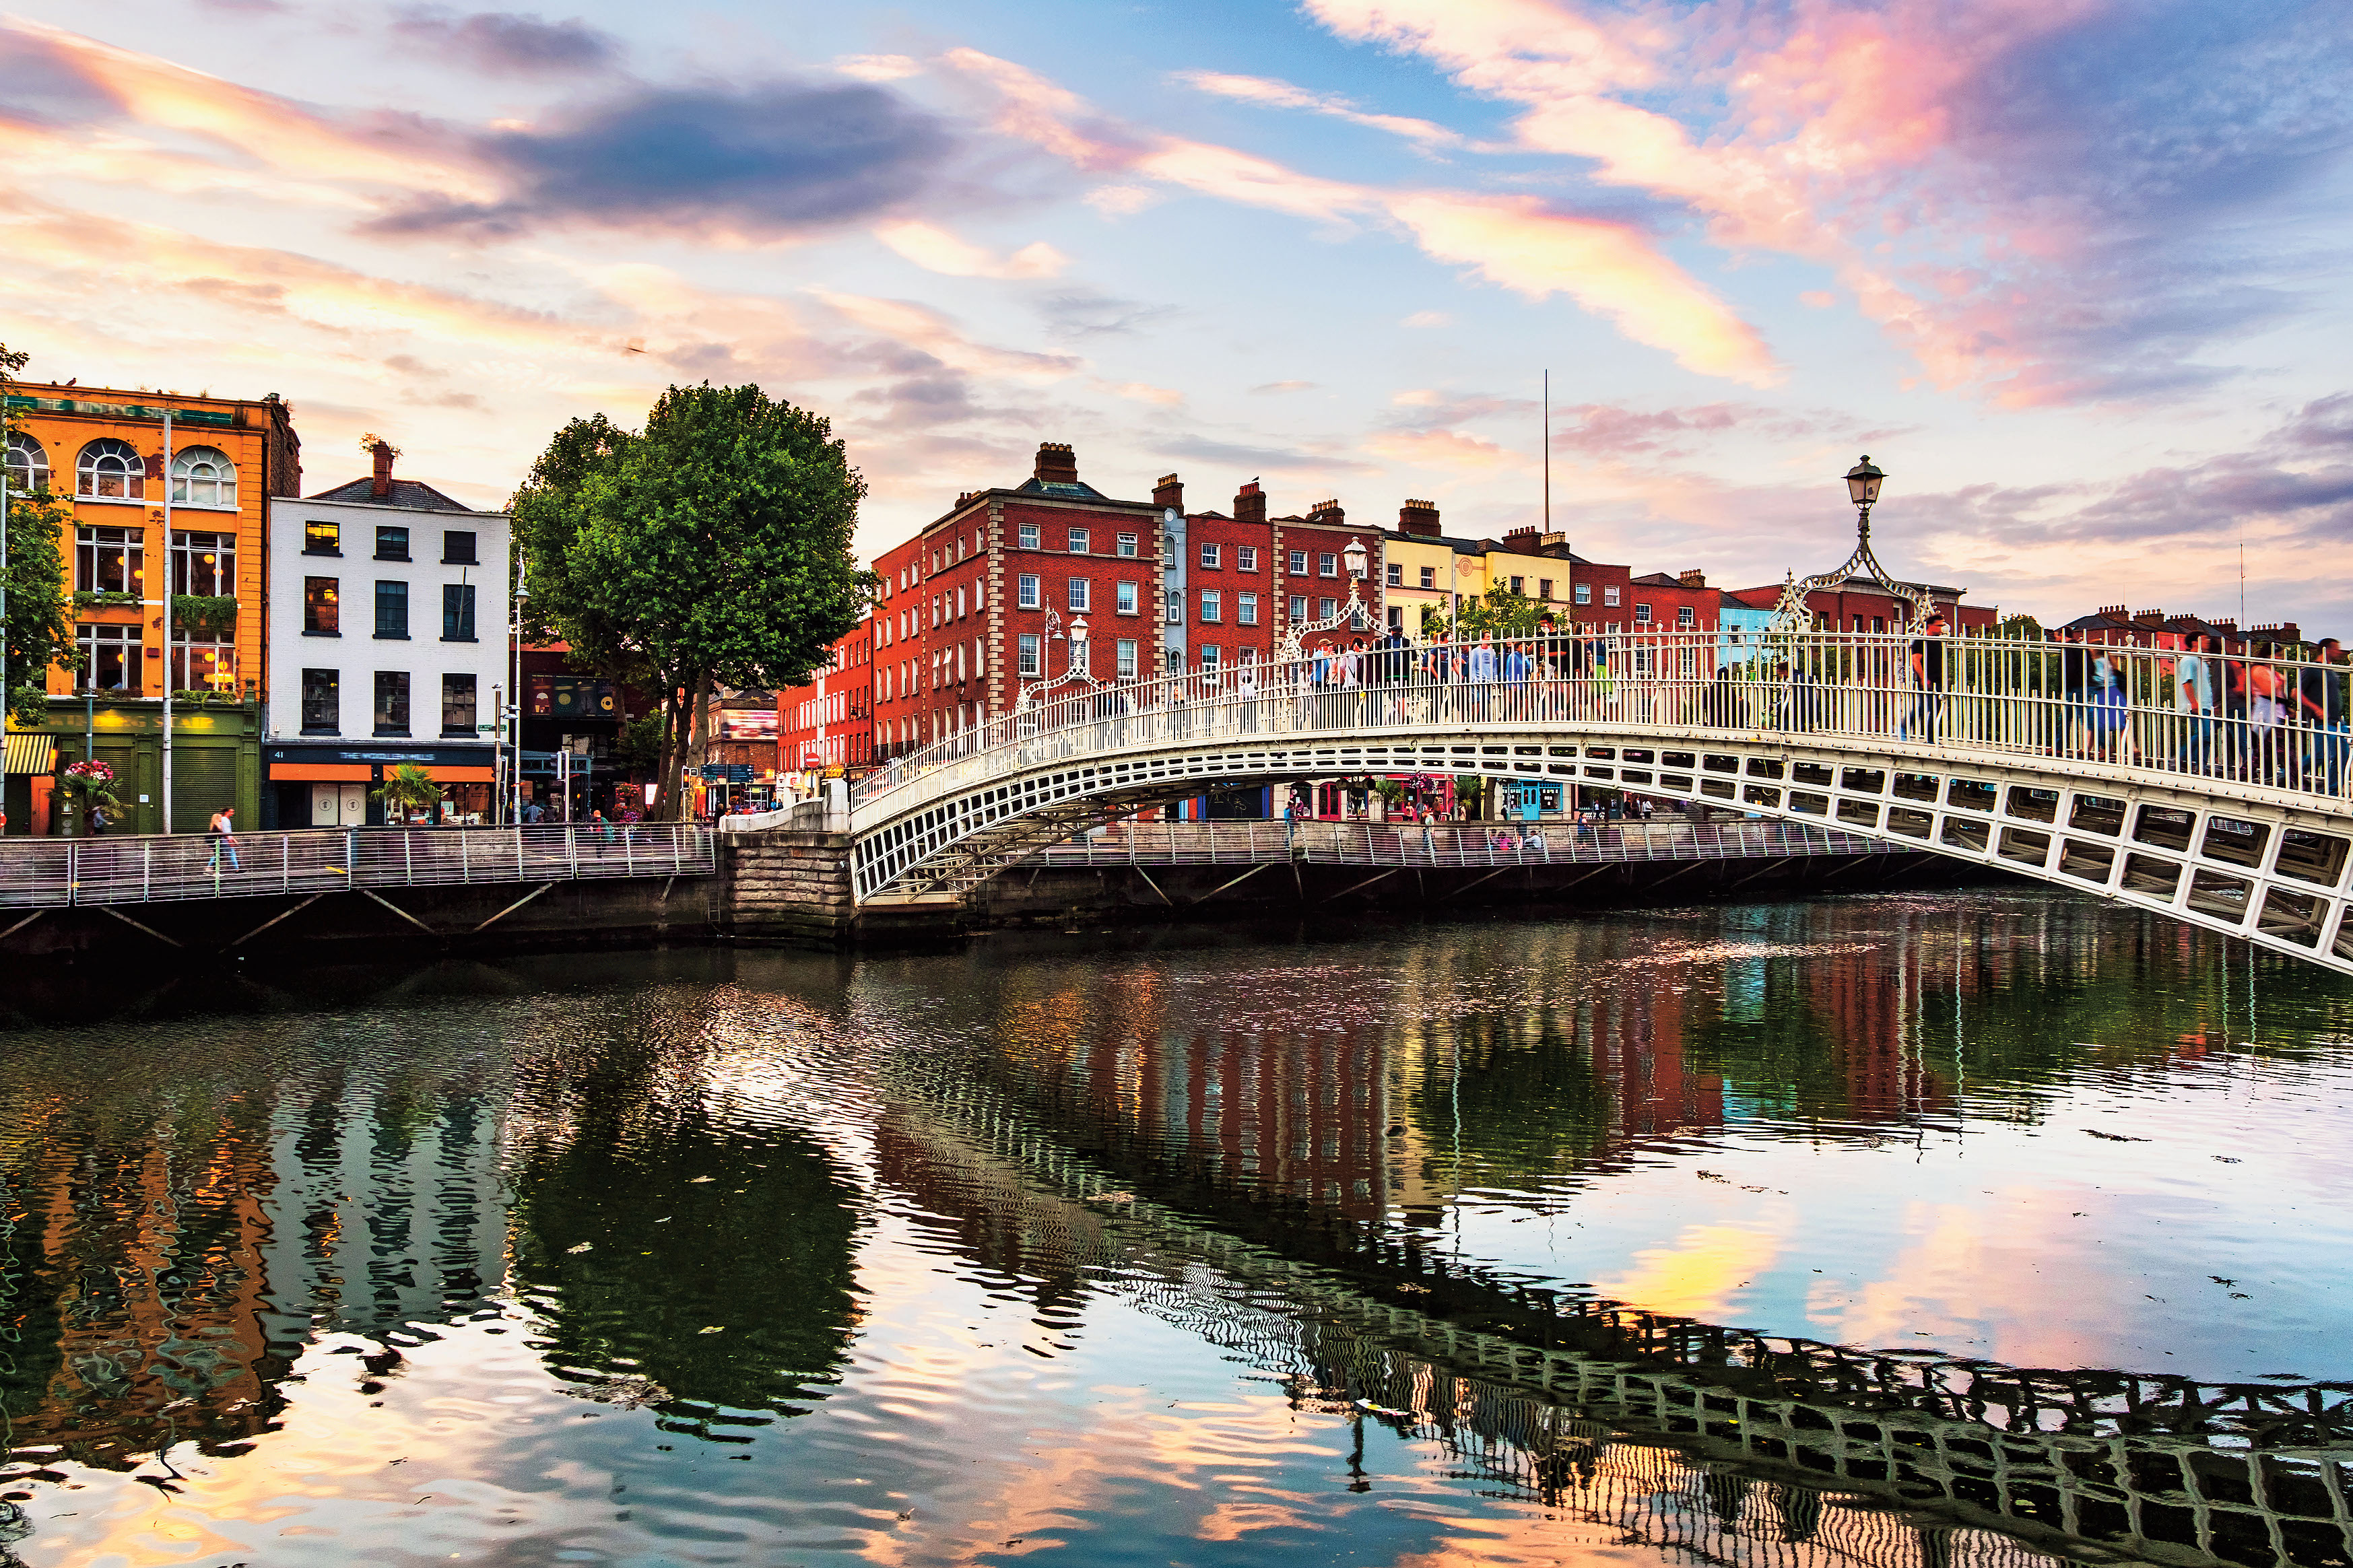 The famous illuminated Penny Bridge in Dublin, Ireland at sunset